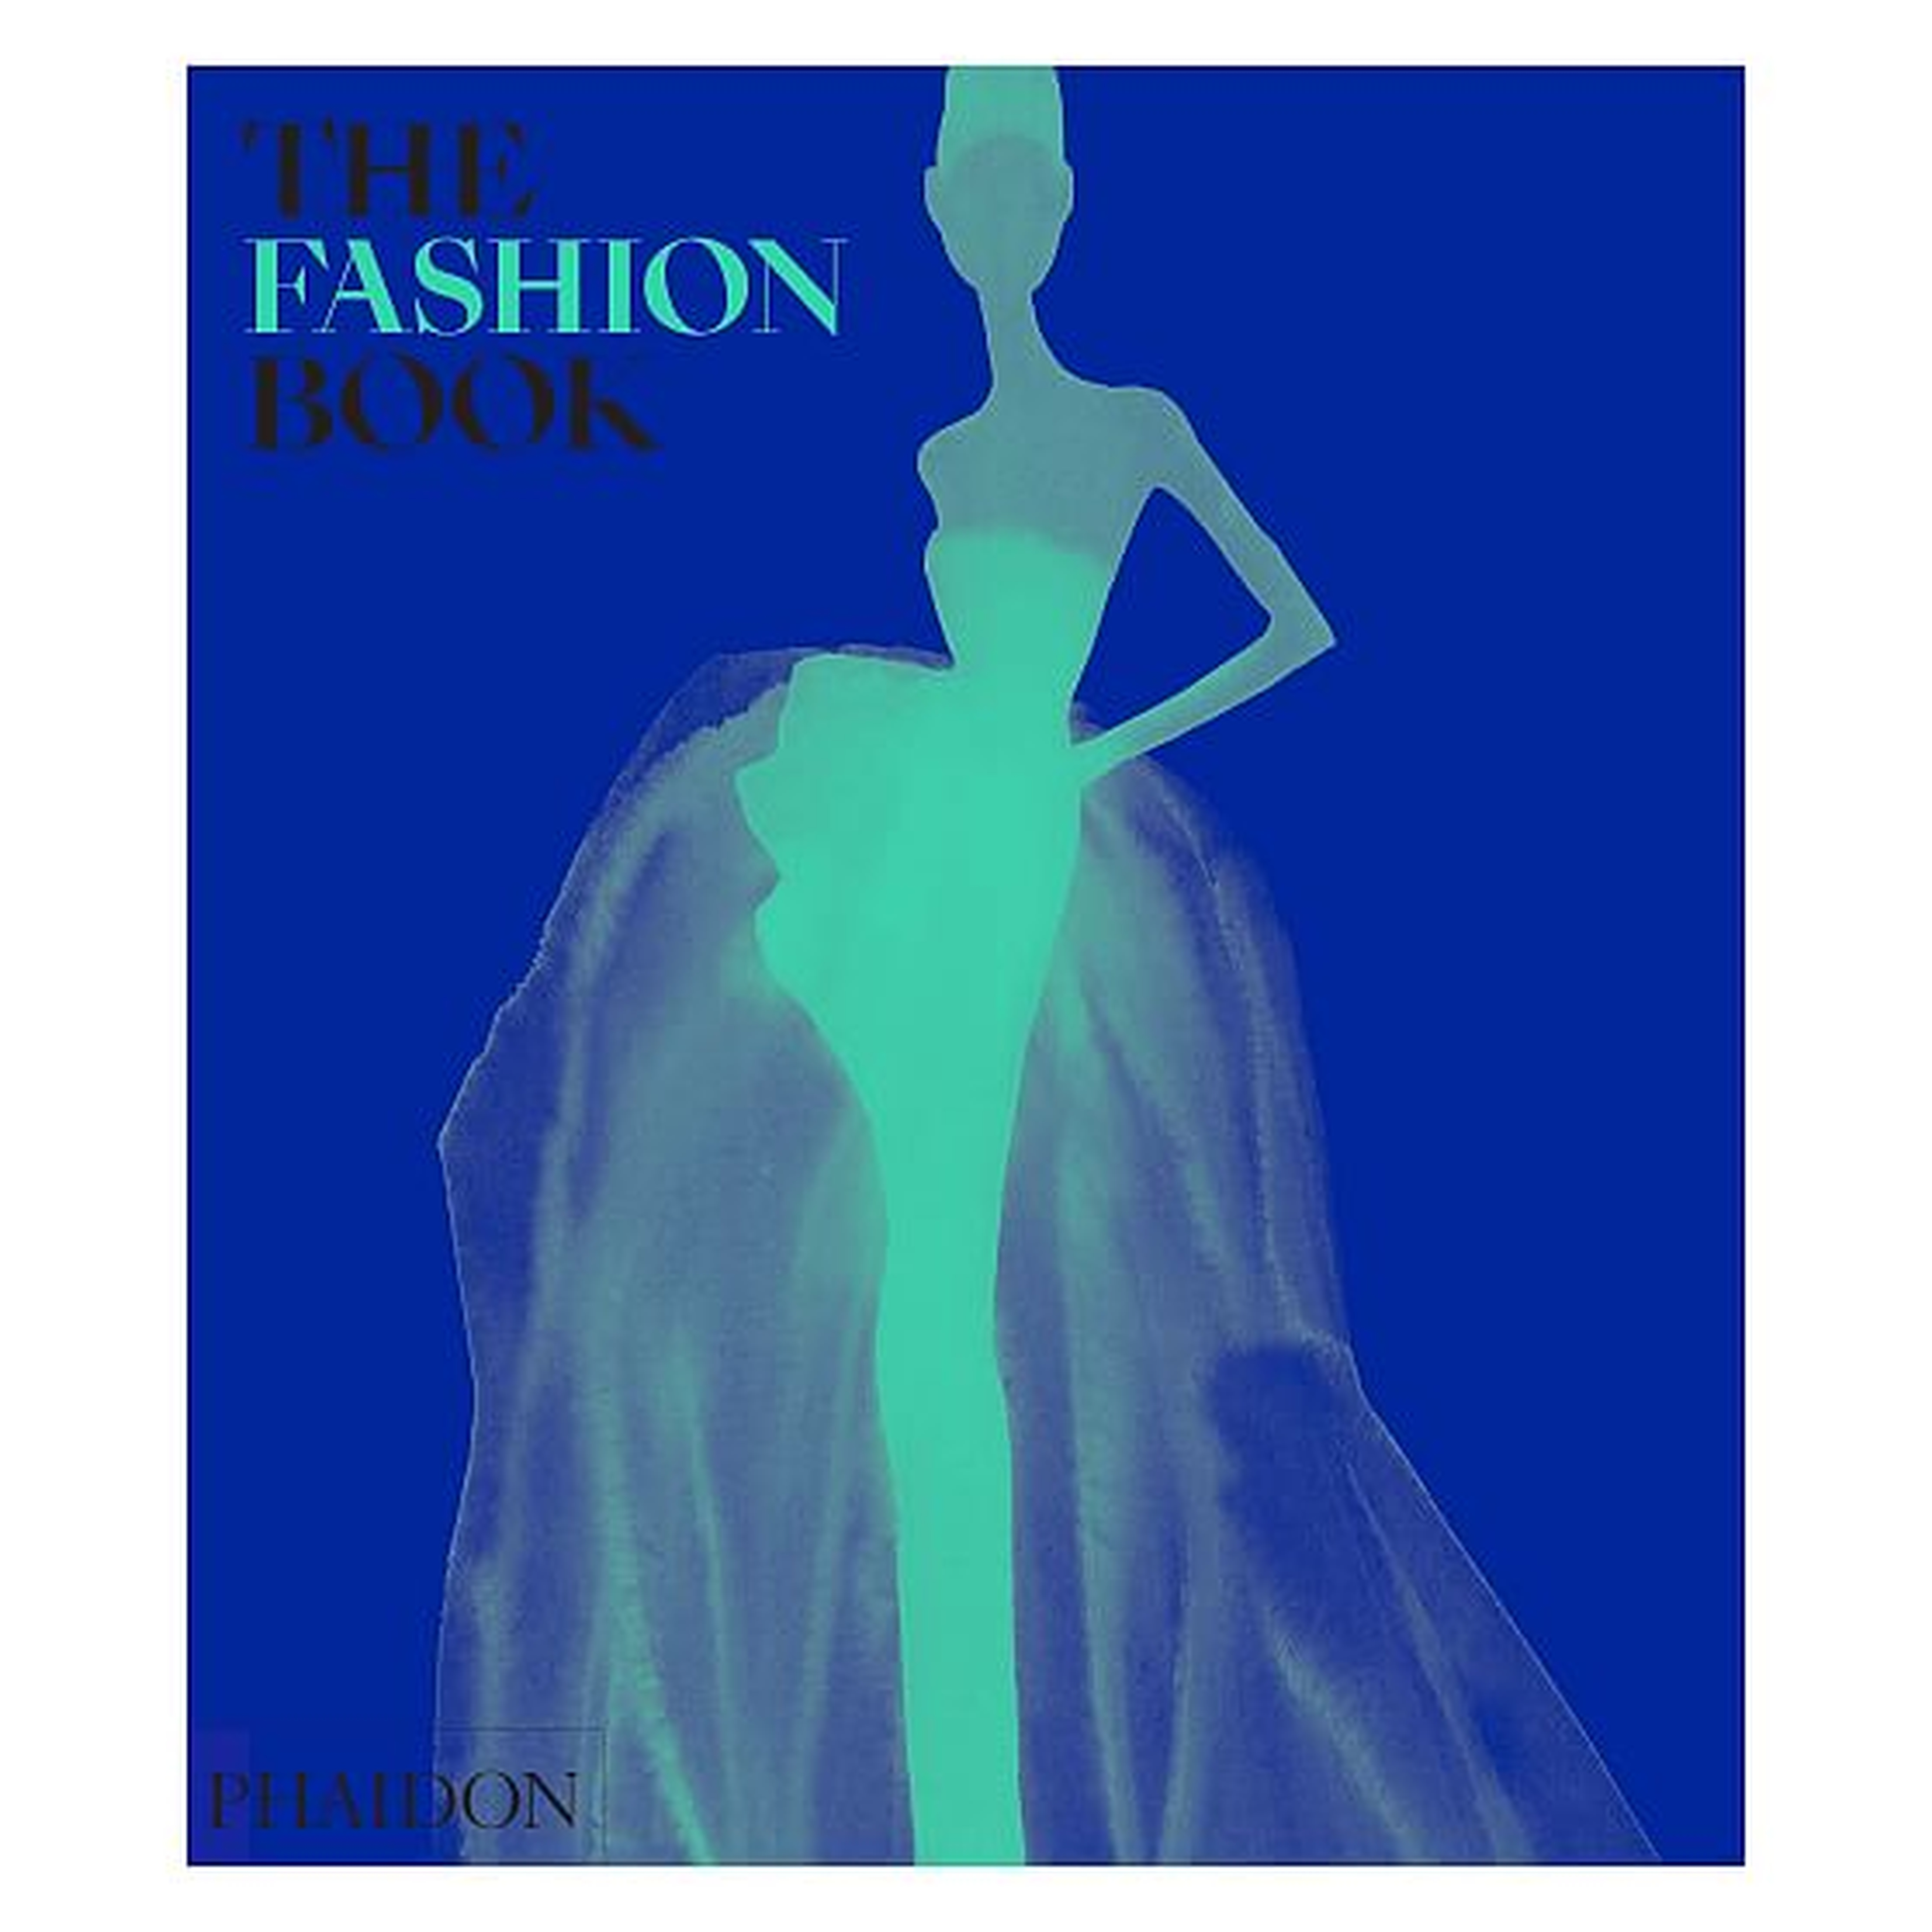 Fashion Book - West Elm